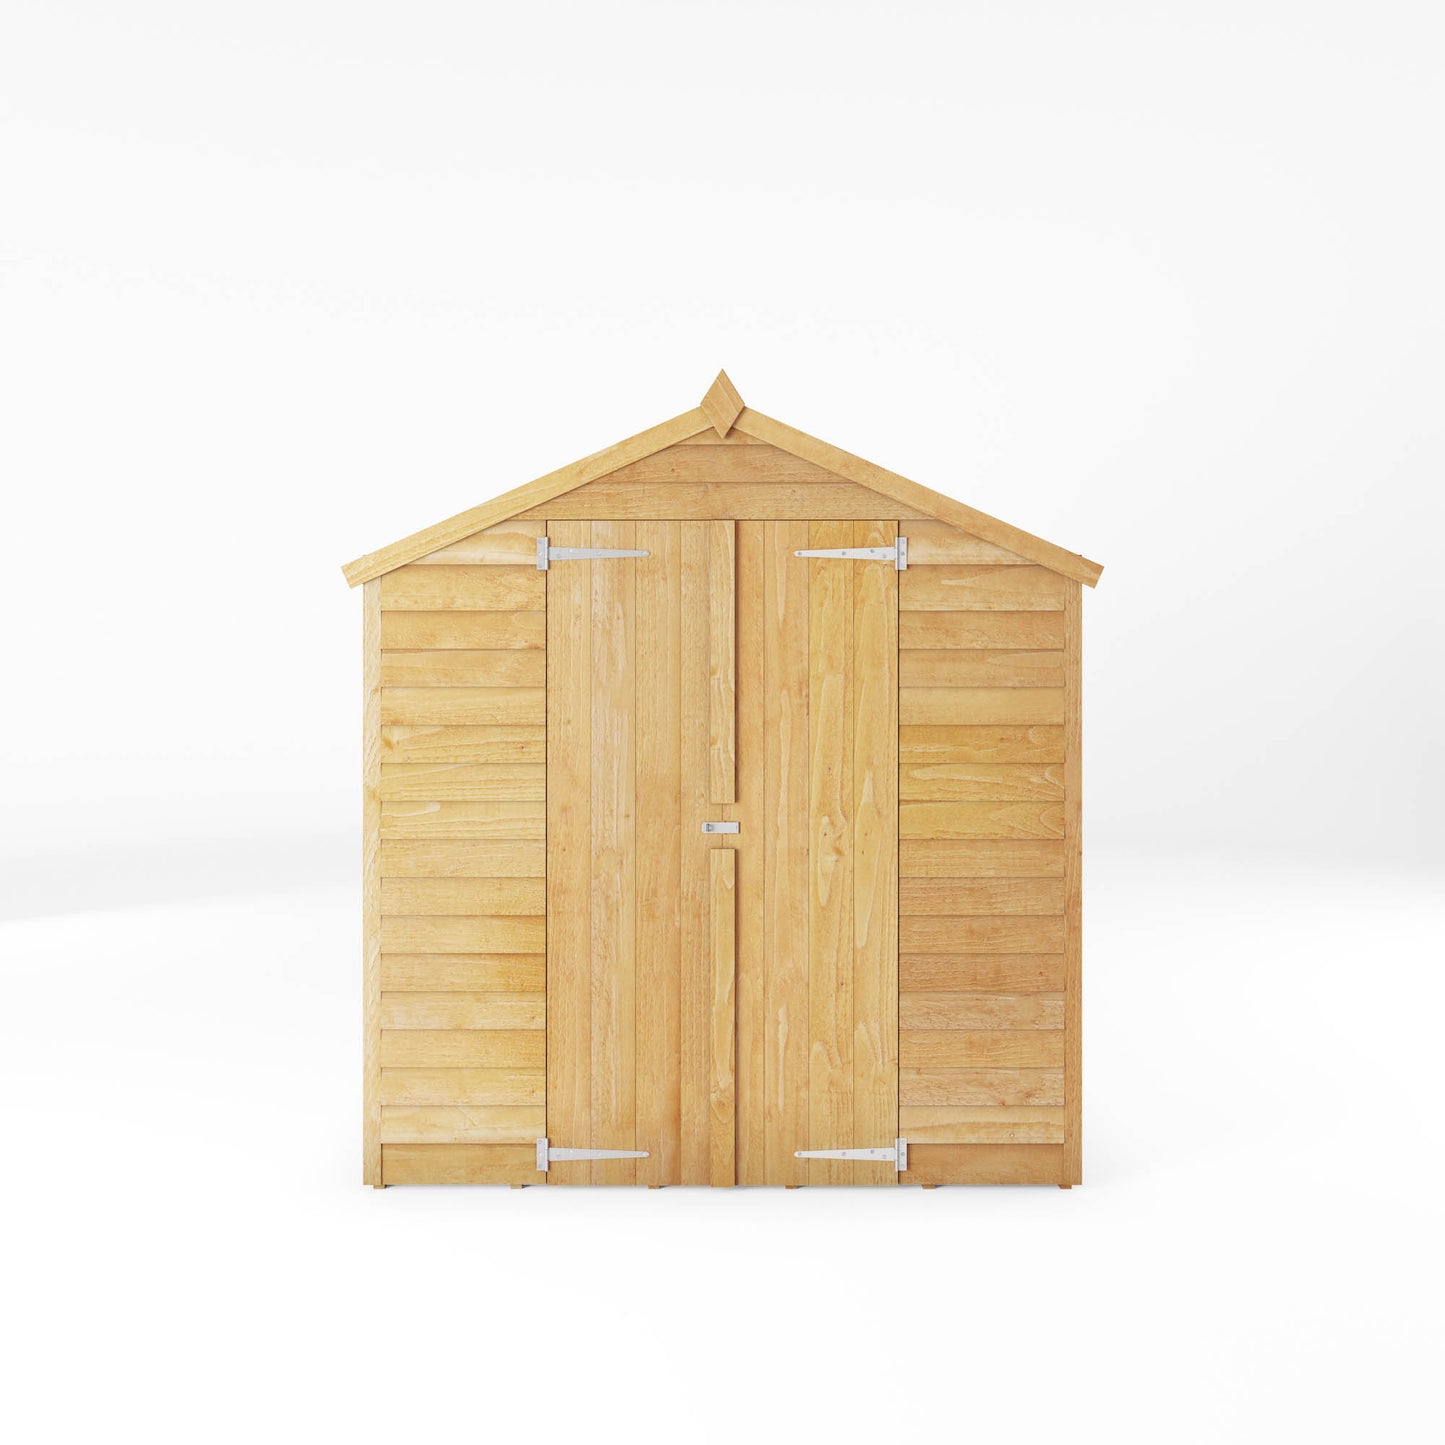 8 x 6 Overlap Double Door Apex Windowless Wooden Shed